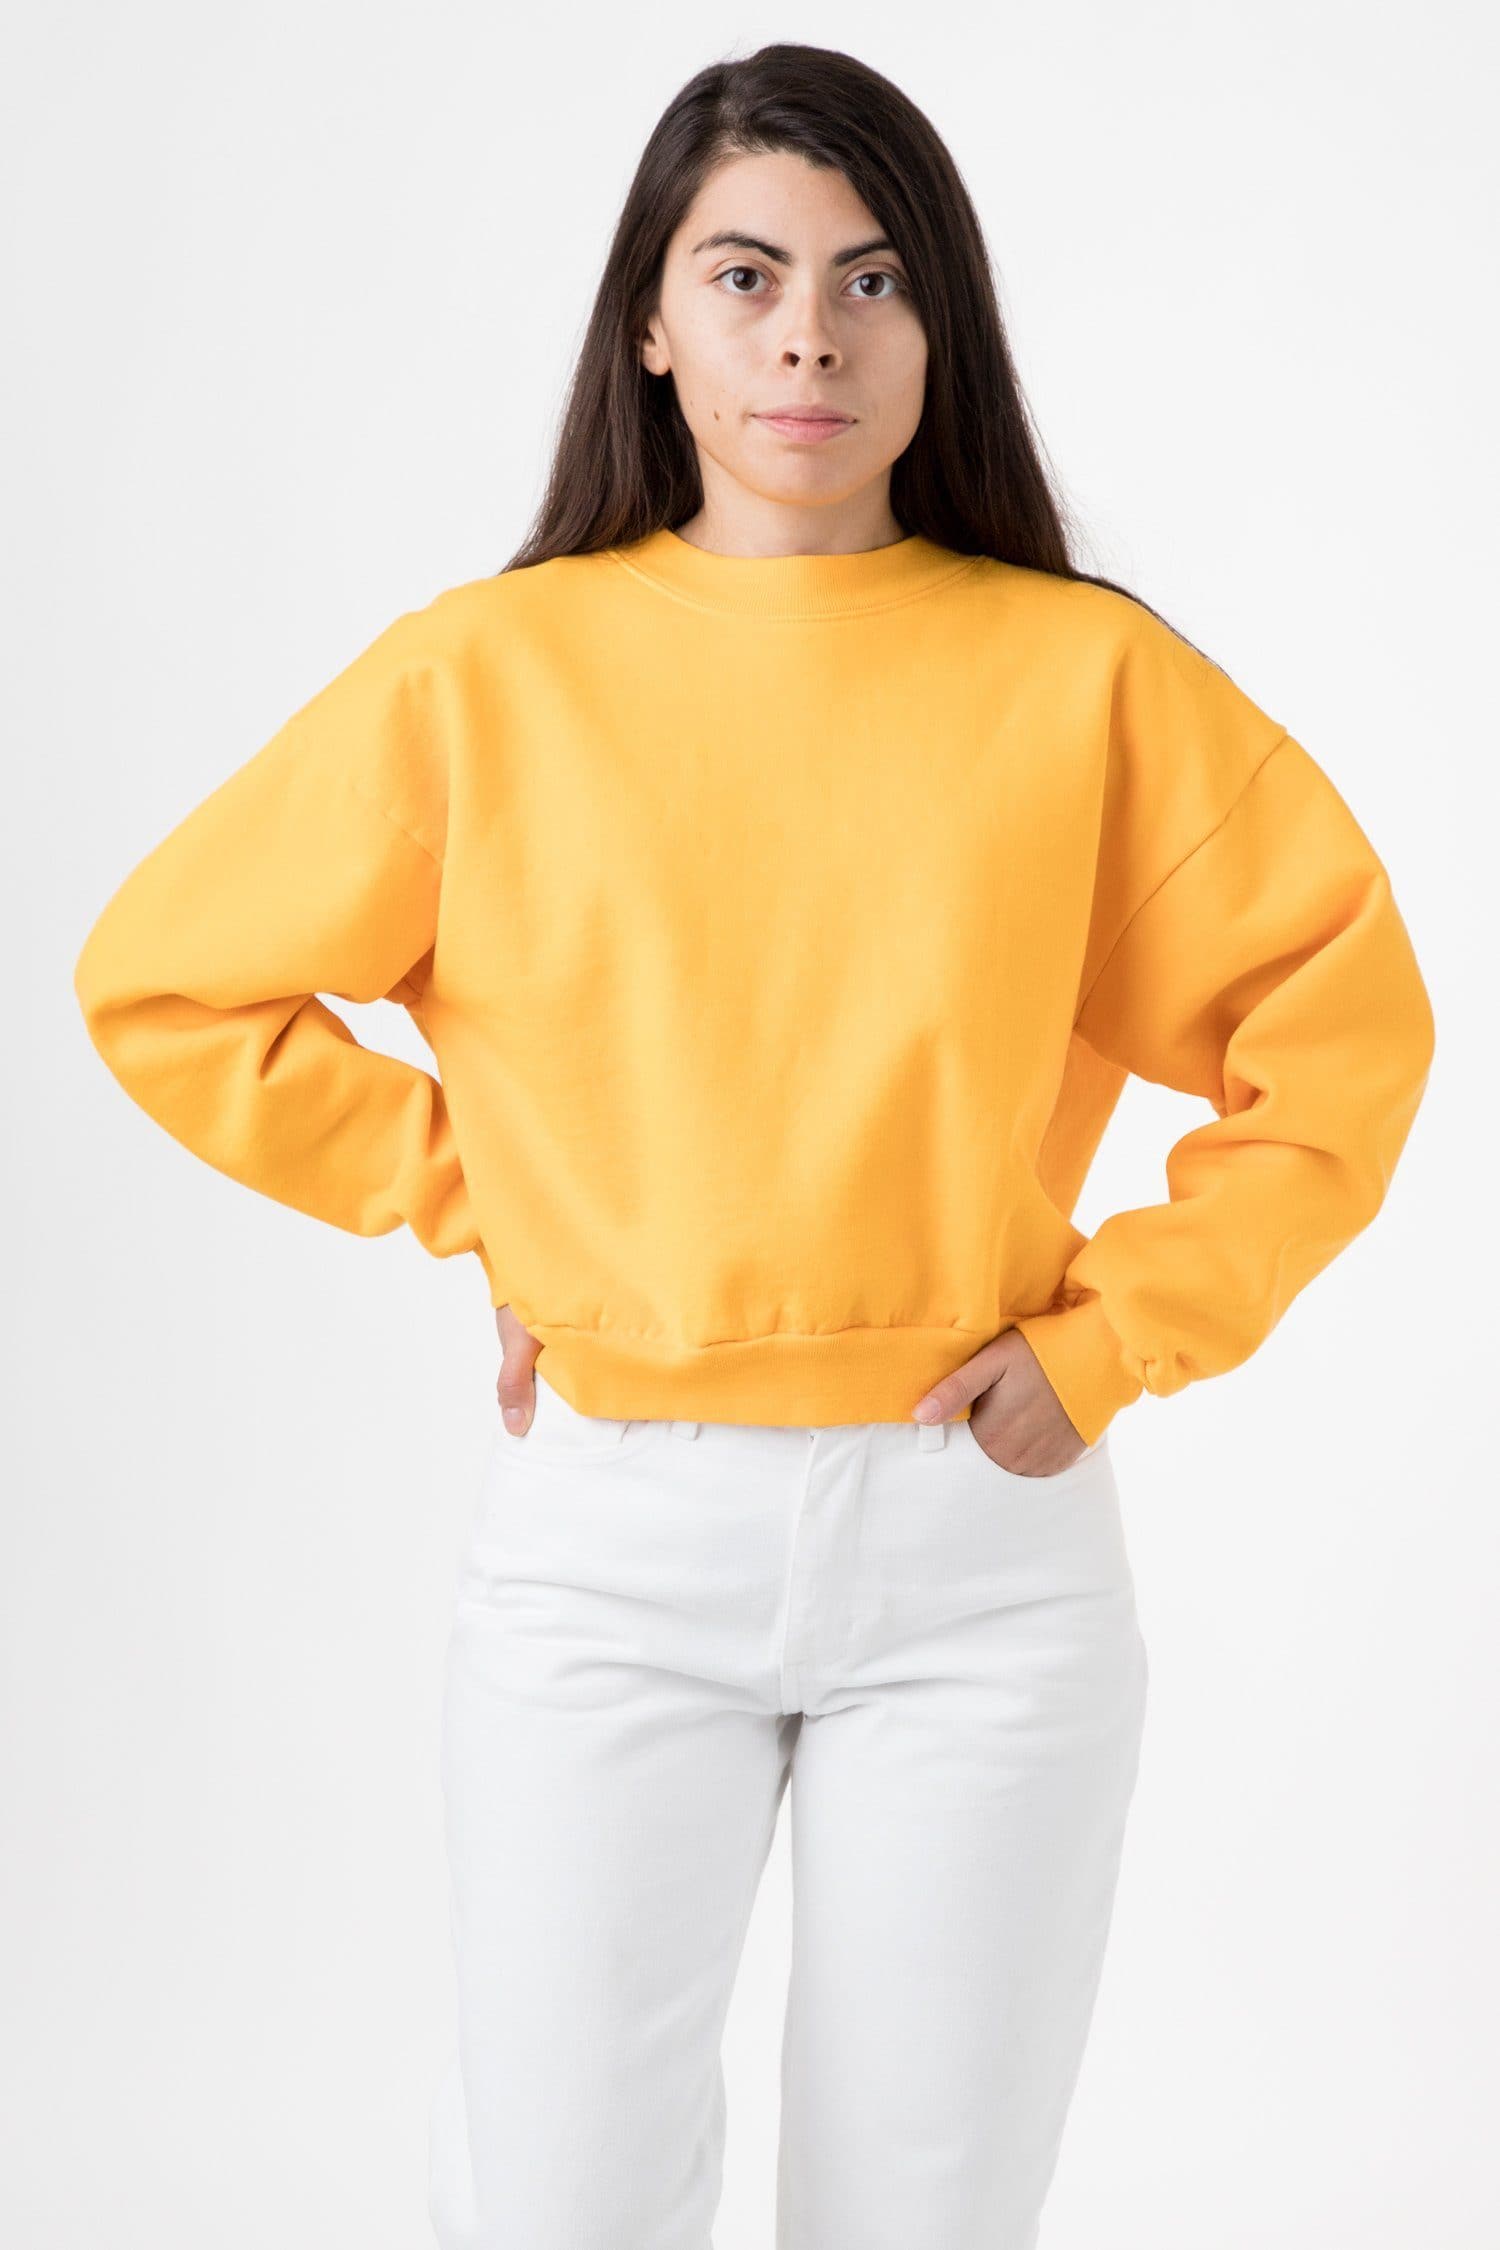 Los Angeles Apparel | Garment Dye Heavy Fleece Cropped Mock Neck Pullover for Women in Gold, Size XL